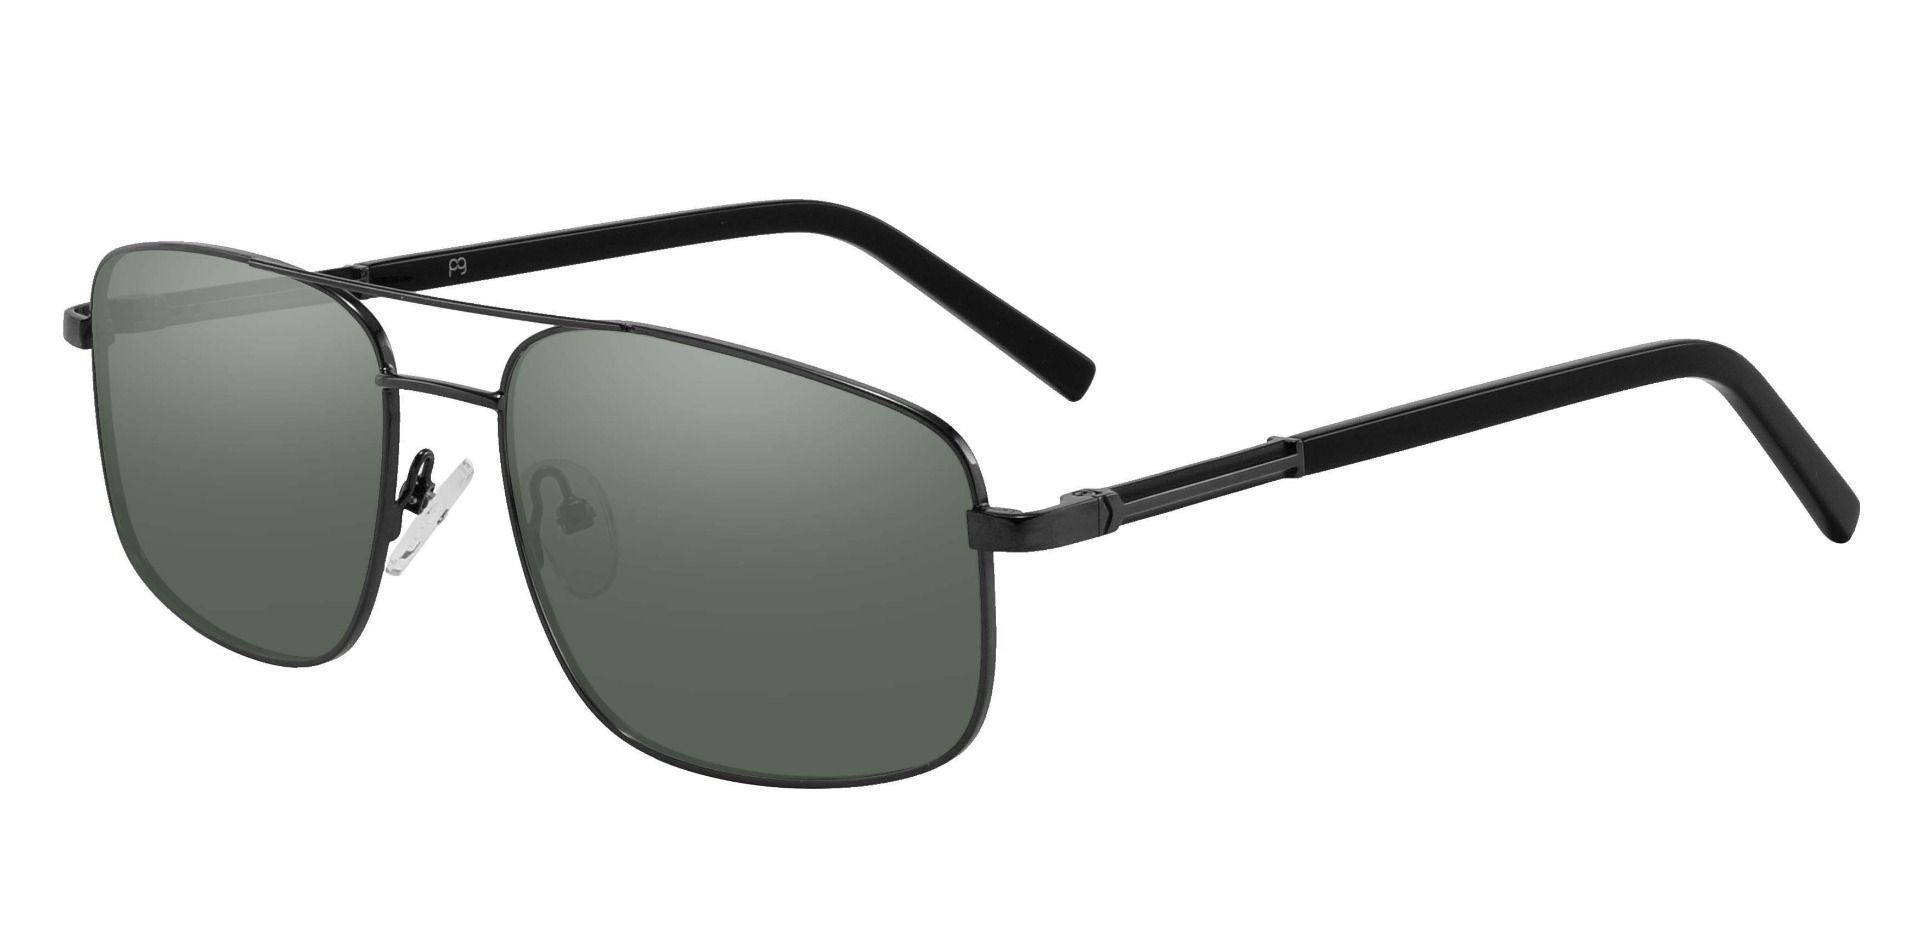 Davenport Aviator Reading Sunglasses - Black Frame With Green Lenses